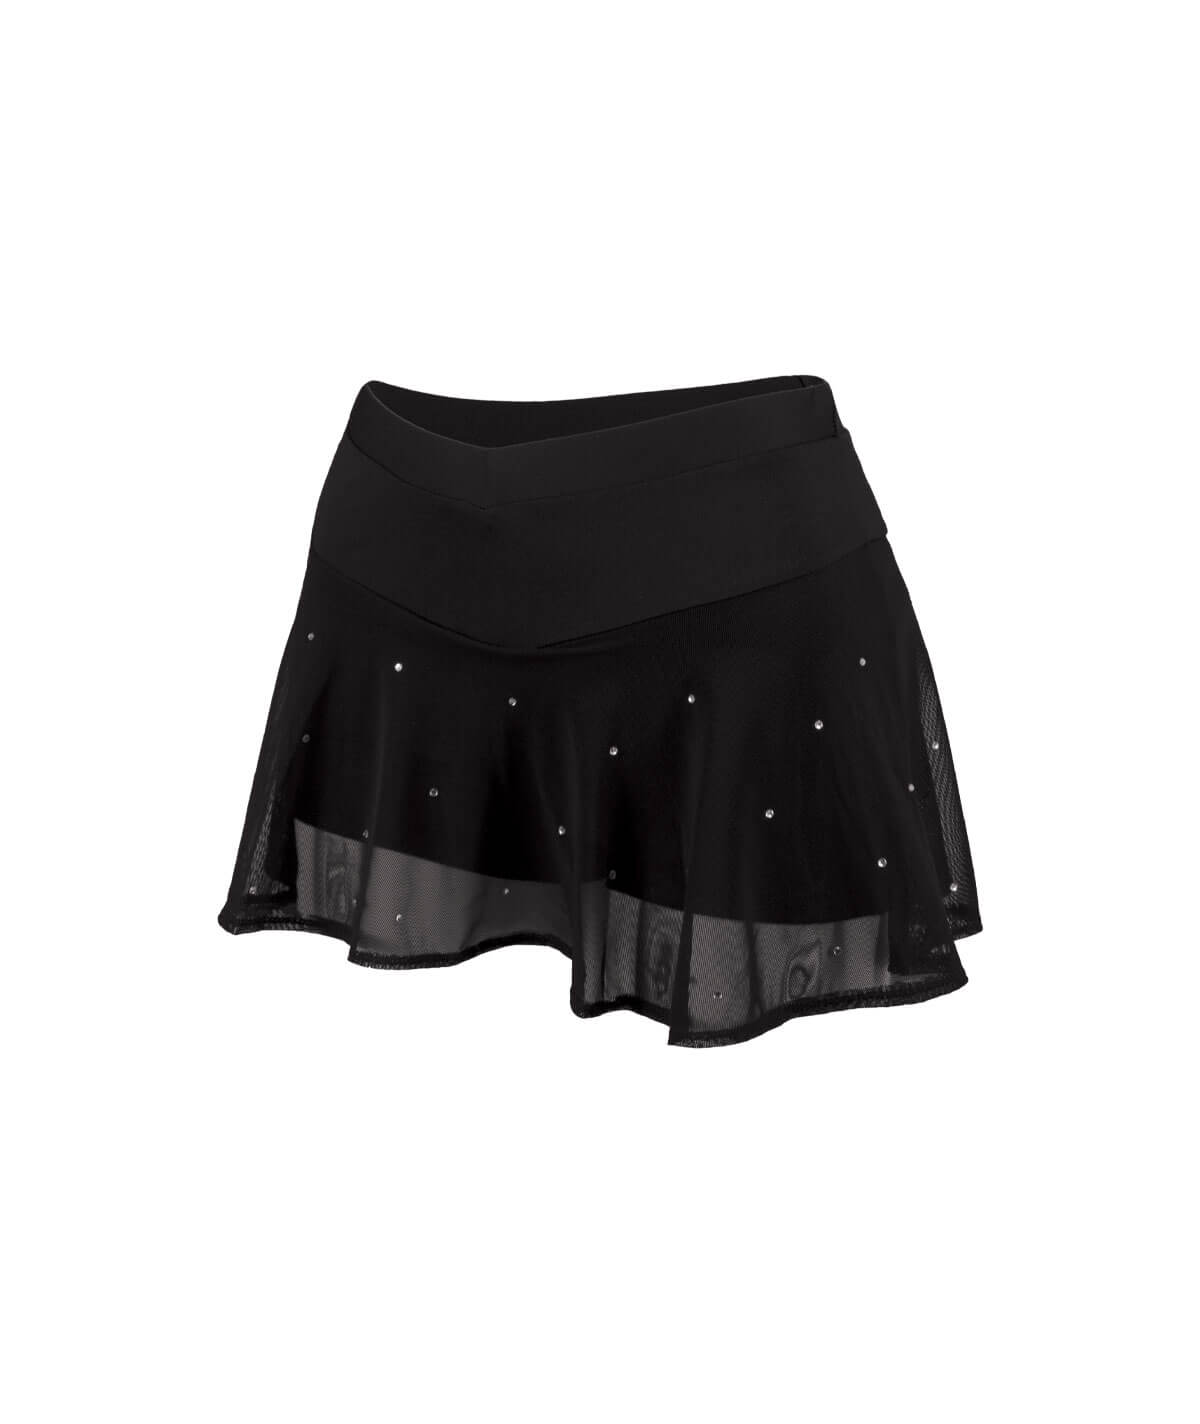 GK All Star Acclaim Glamour Flutter Skirt